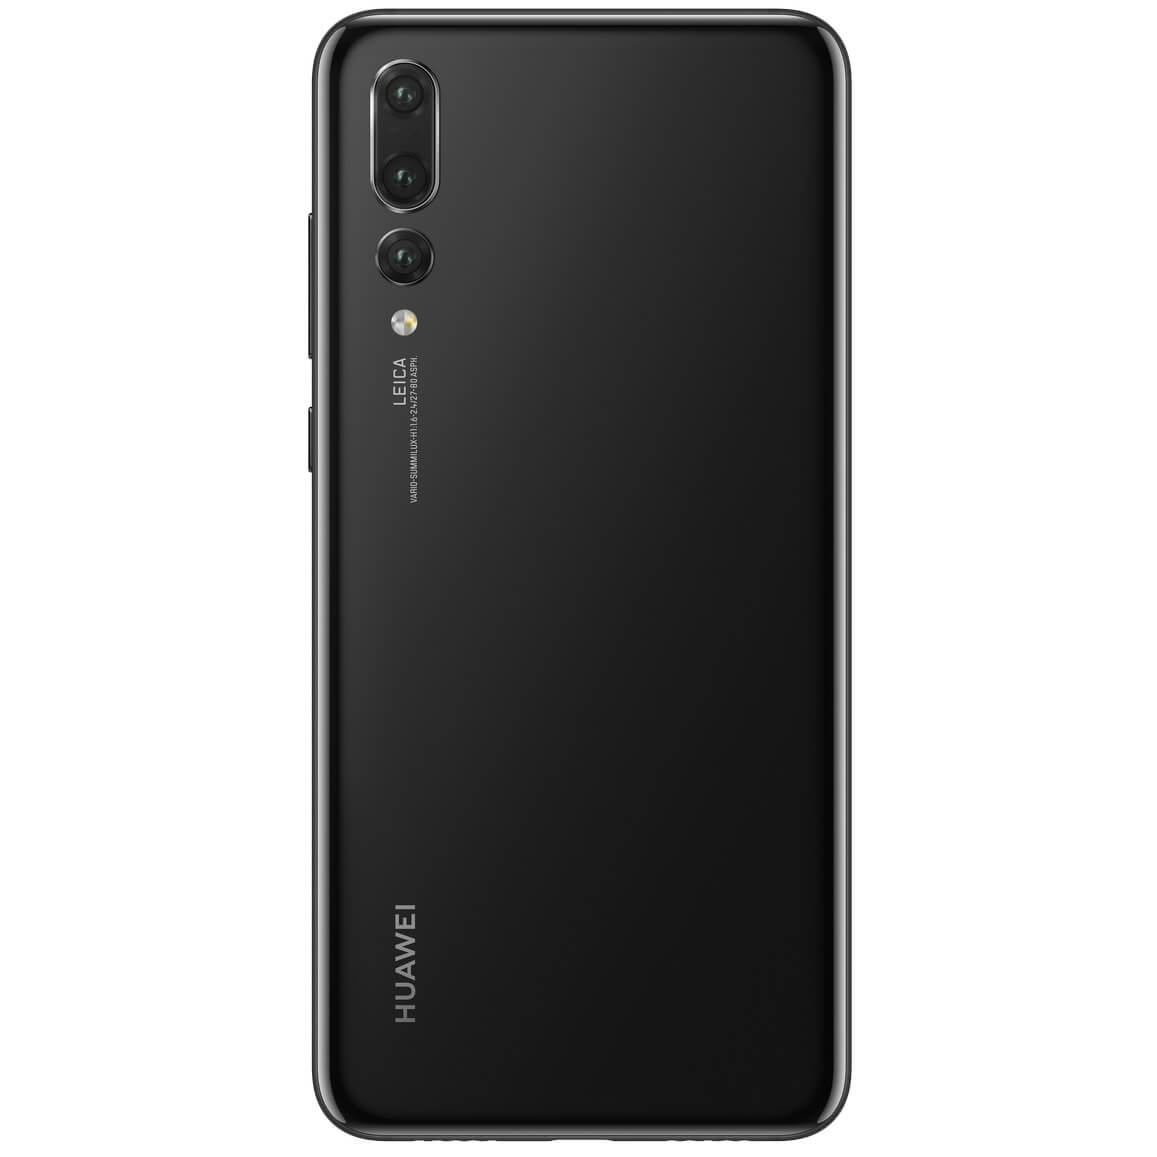 Купить huawei p 2019. Huawei Pot-lx1. Хуавей p Smart 2019. P Smart 2019 Pot-lx1. Смартфон Huawei p20, черный.